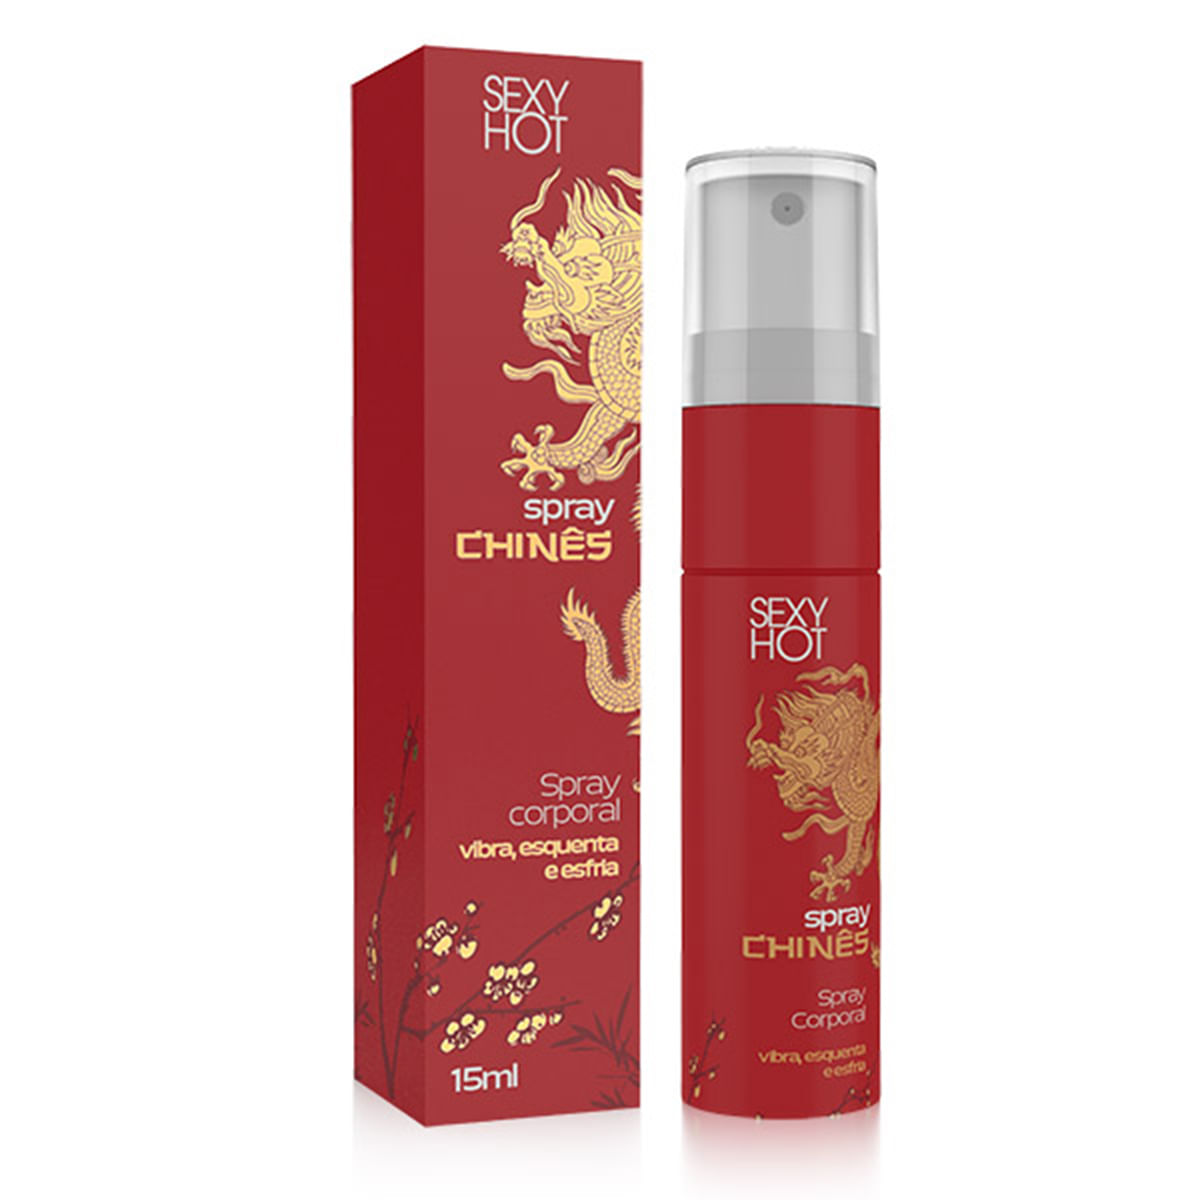 Spray Chinês Esquenta e Esfria Comestível 15g Sexy Hot